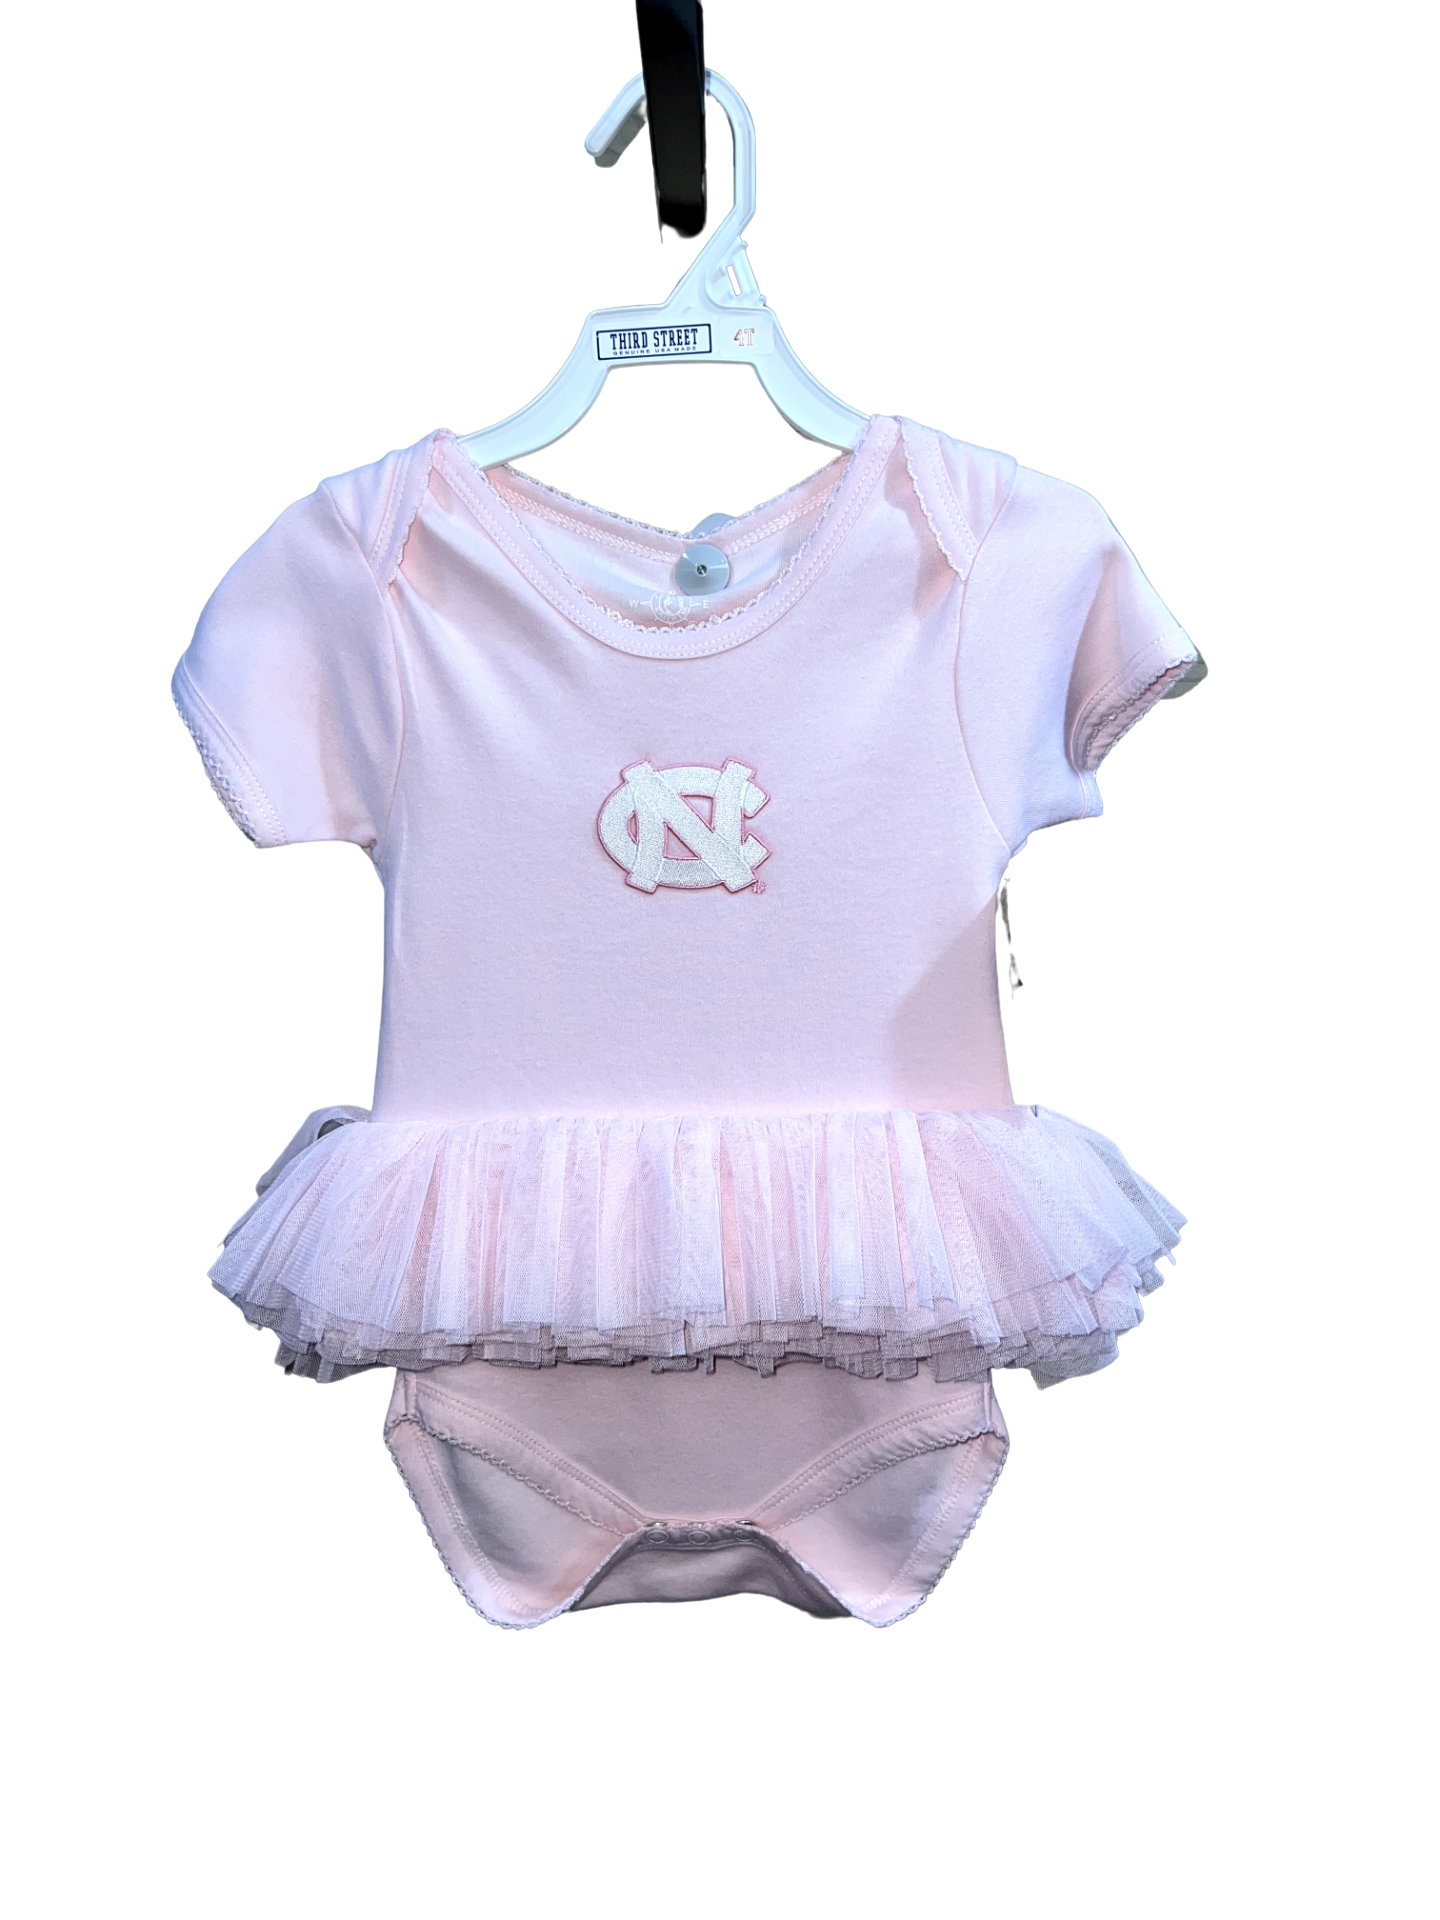 UNC Tar Heel Baby Dress Onesie - Infant